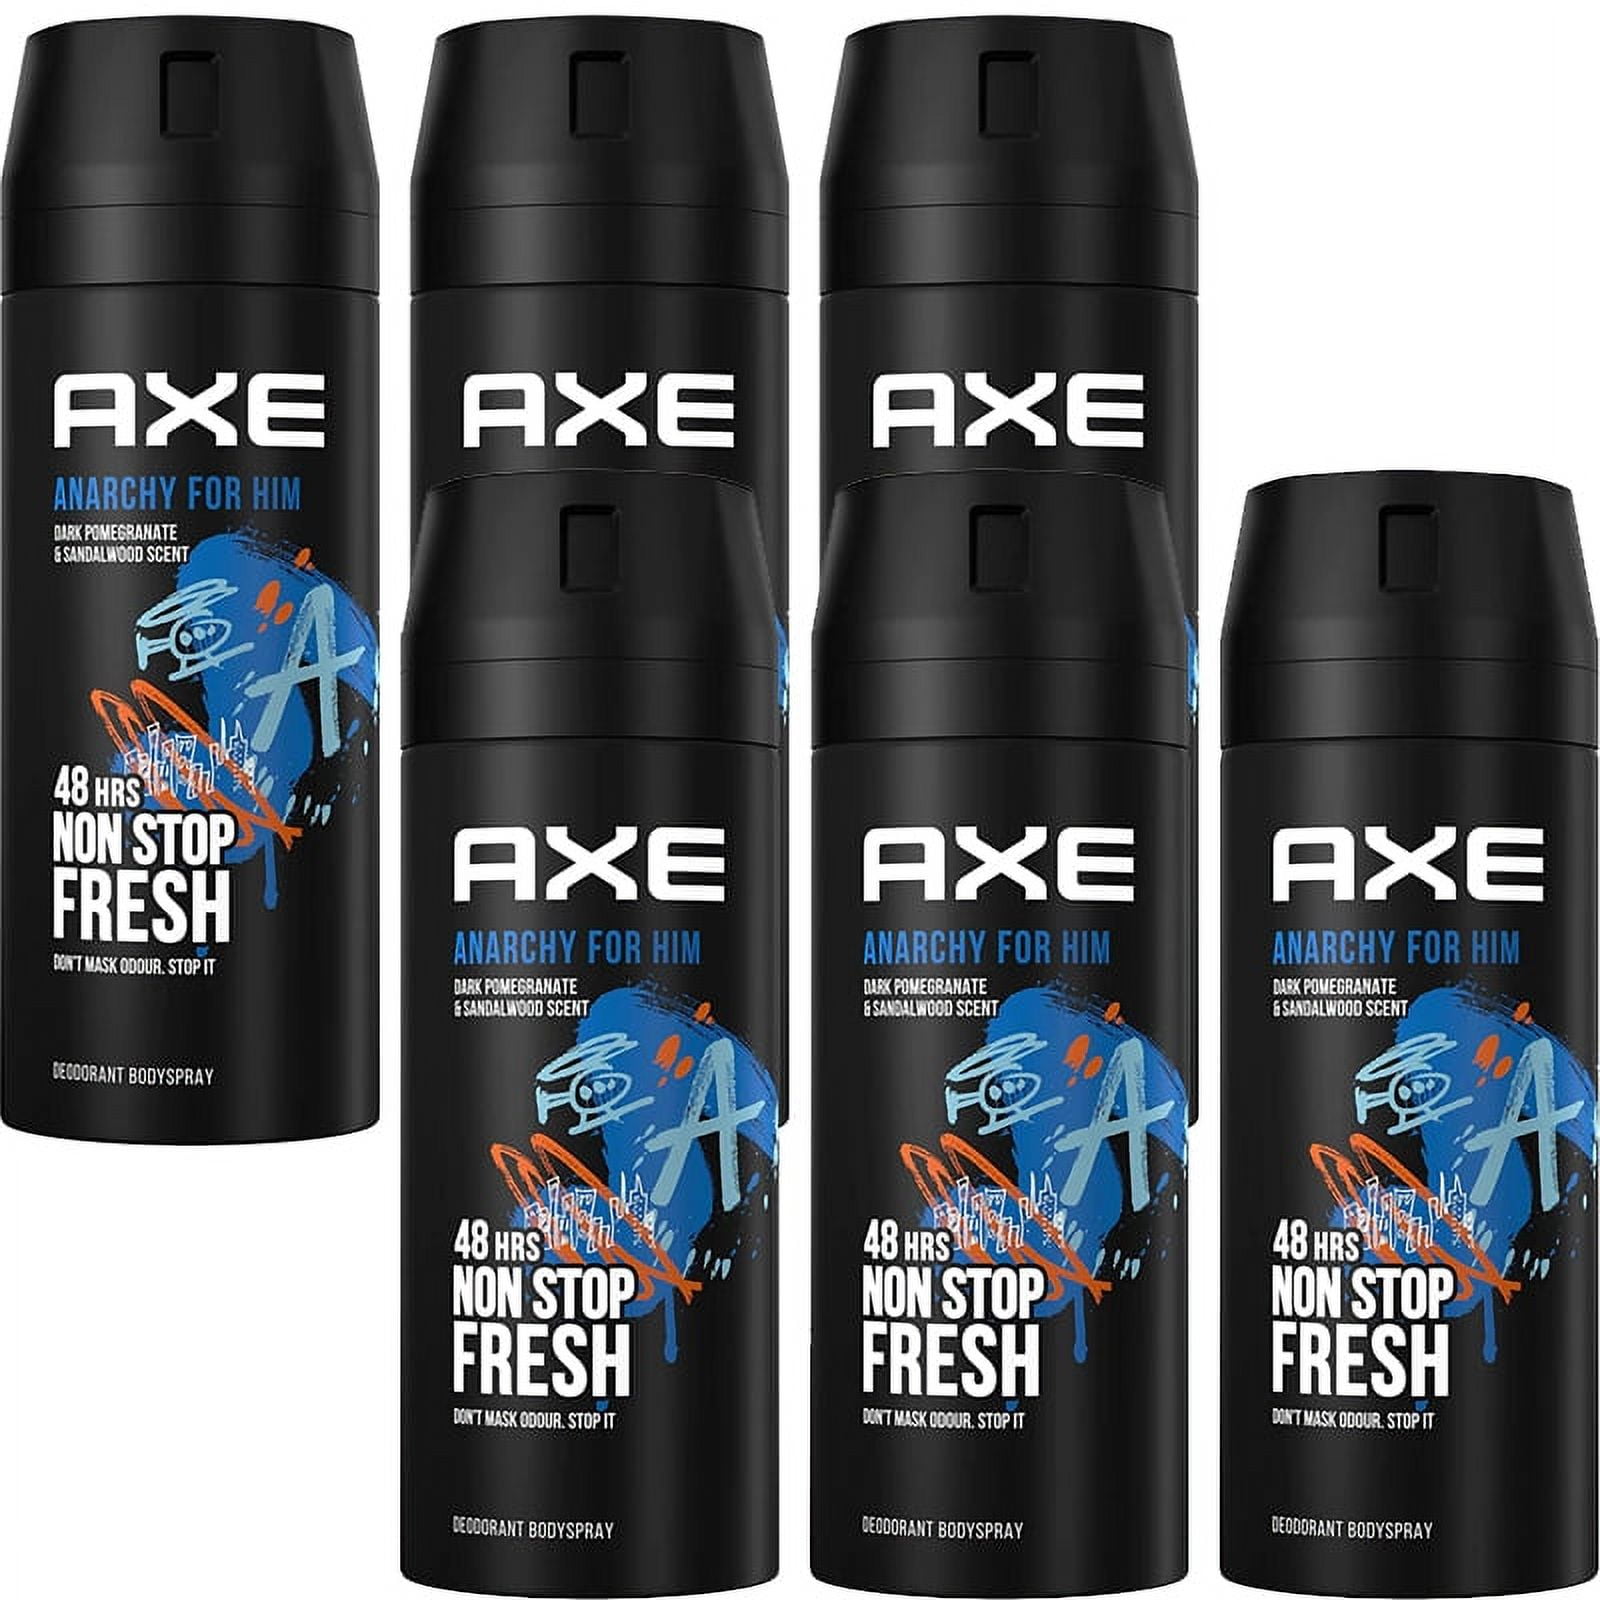 AXE deodorant bodyspray 150 ml. Alaska. - Tarraco Import Export